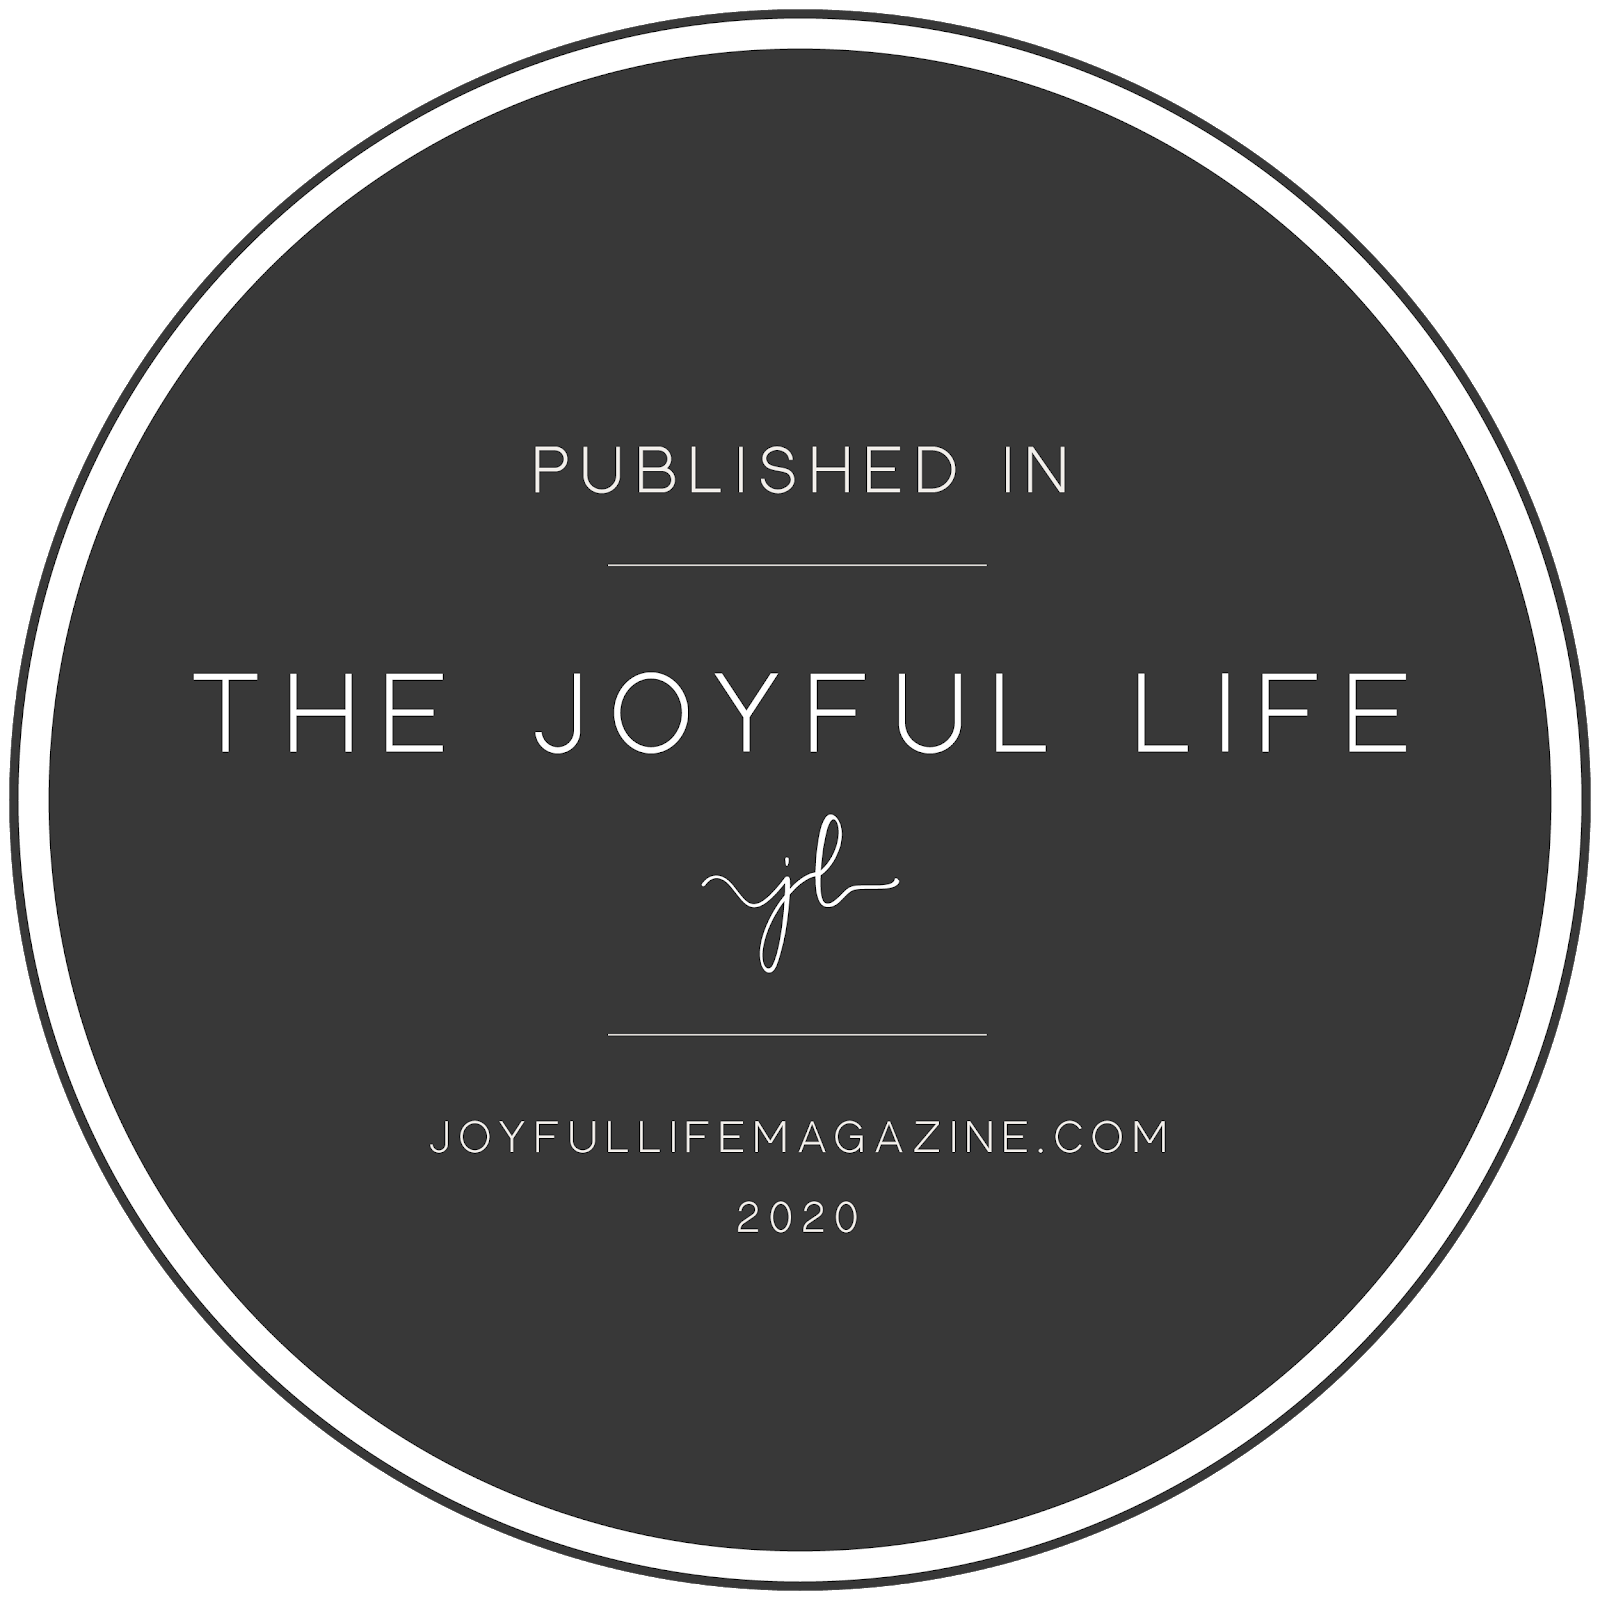 The Joyful Life